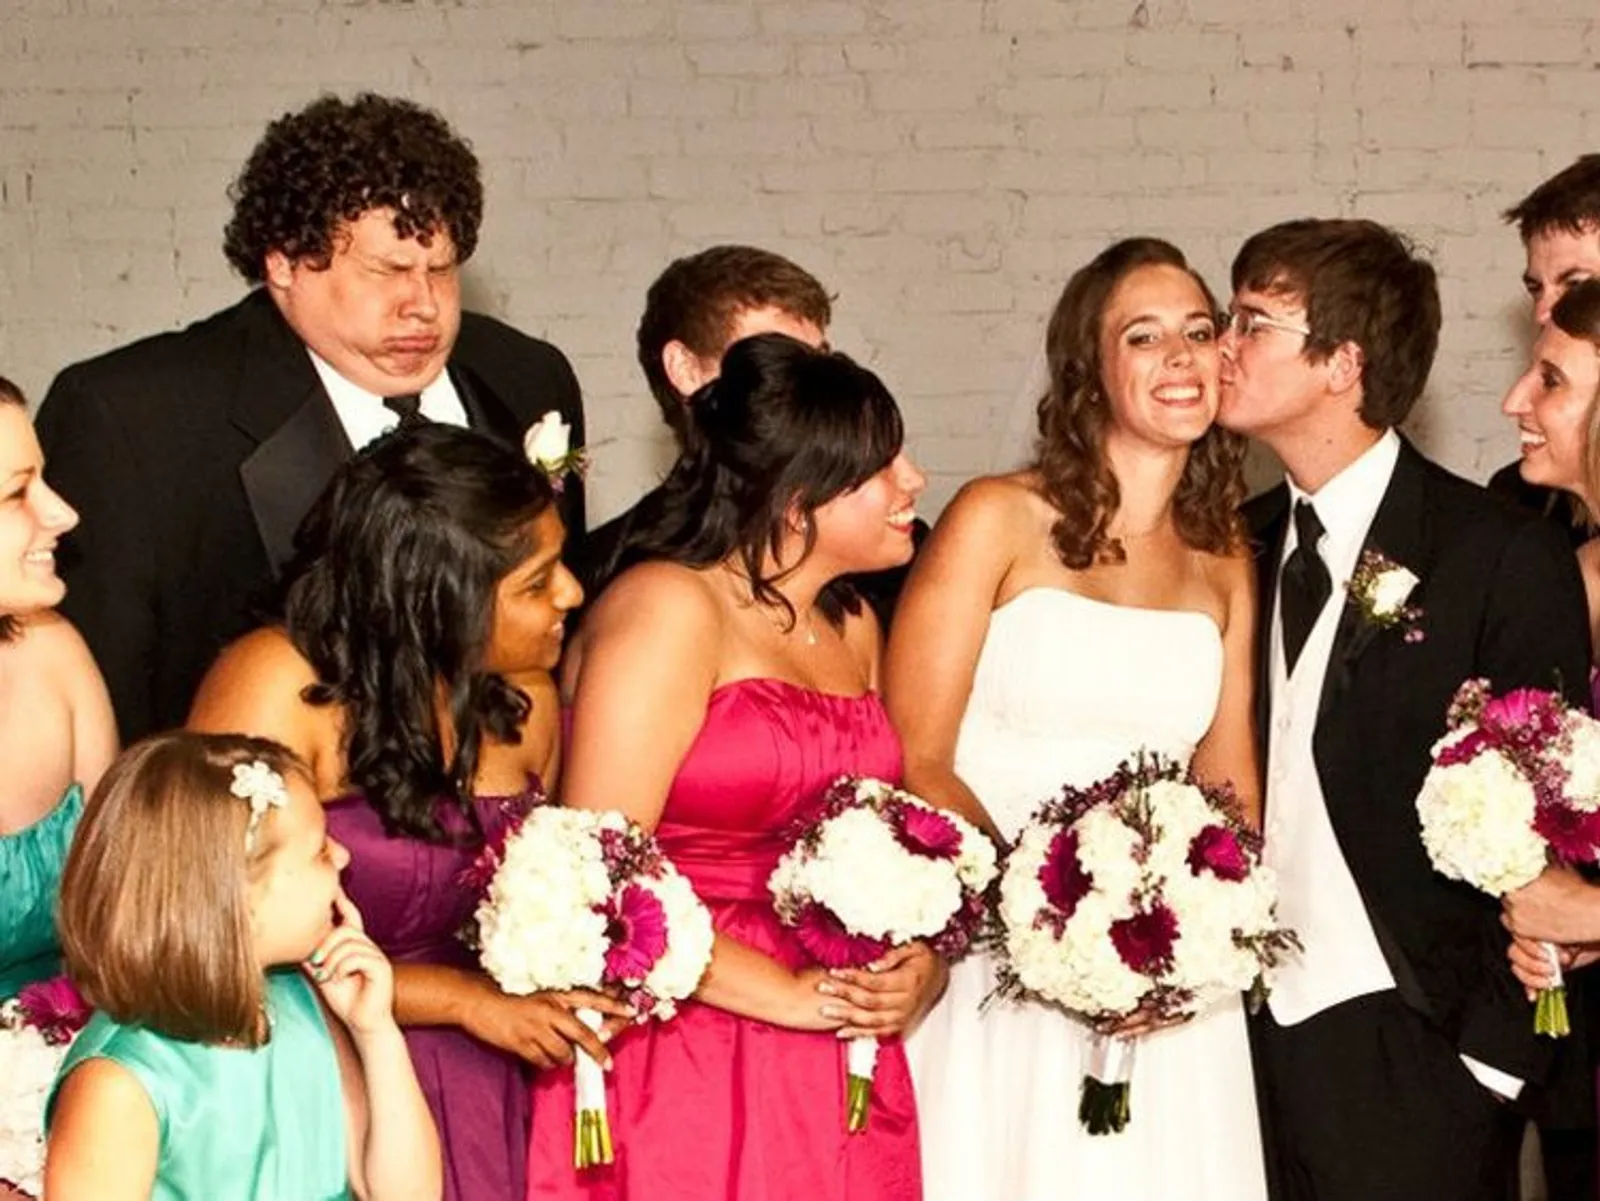 Kocak! Ini 11 Foto Gagal Saat Pernikahan yang Mengocok Perut